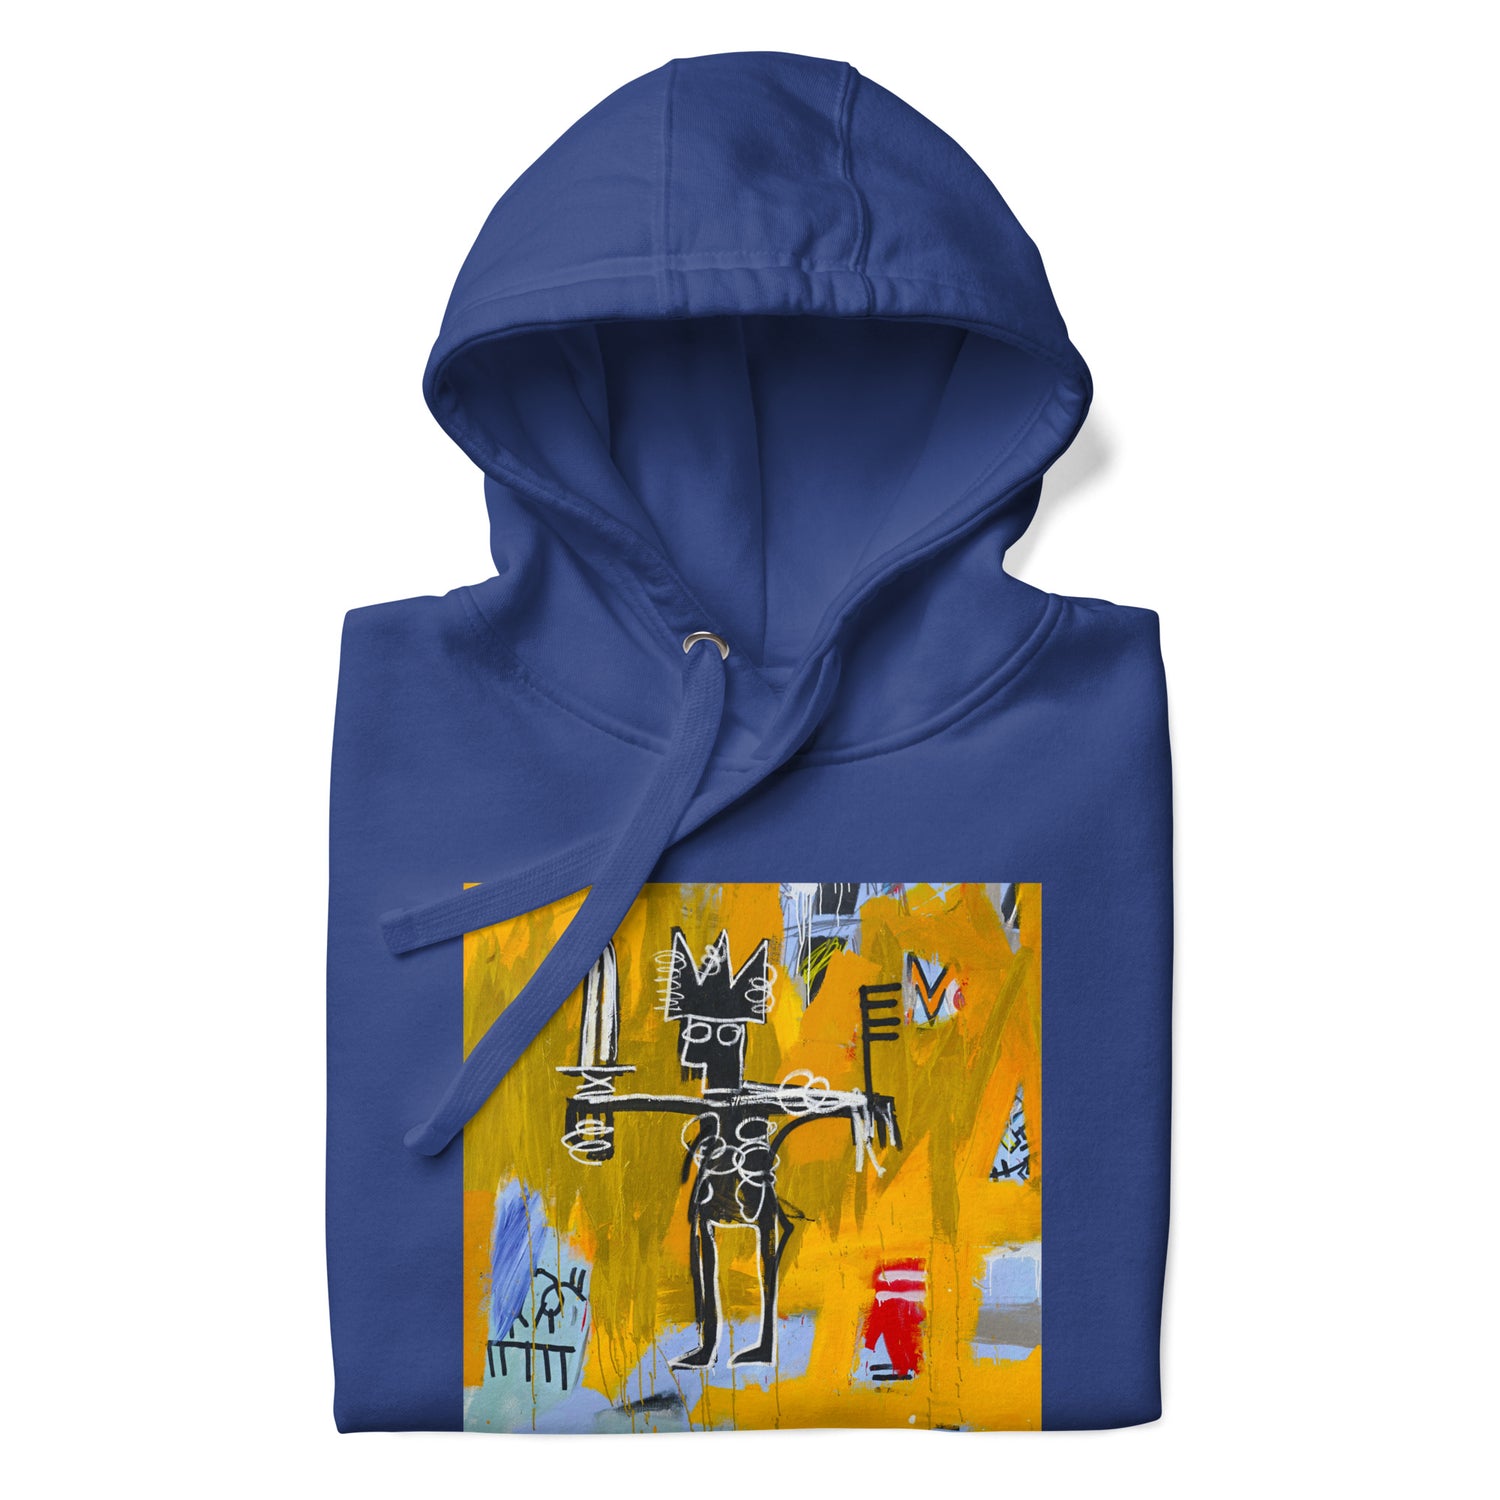 Jean-Michel Basquiat "Julius Caesar on Gold" Artwork Printed Premium Streetwear Sweatshirt Hoodie Royal Blue